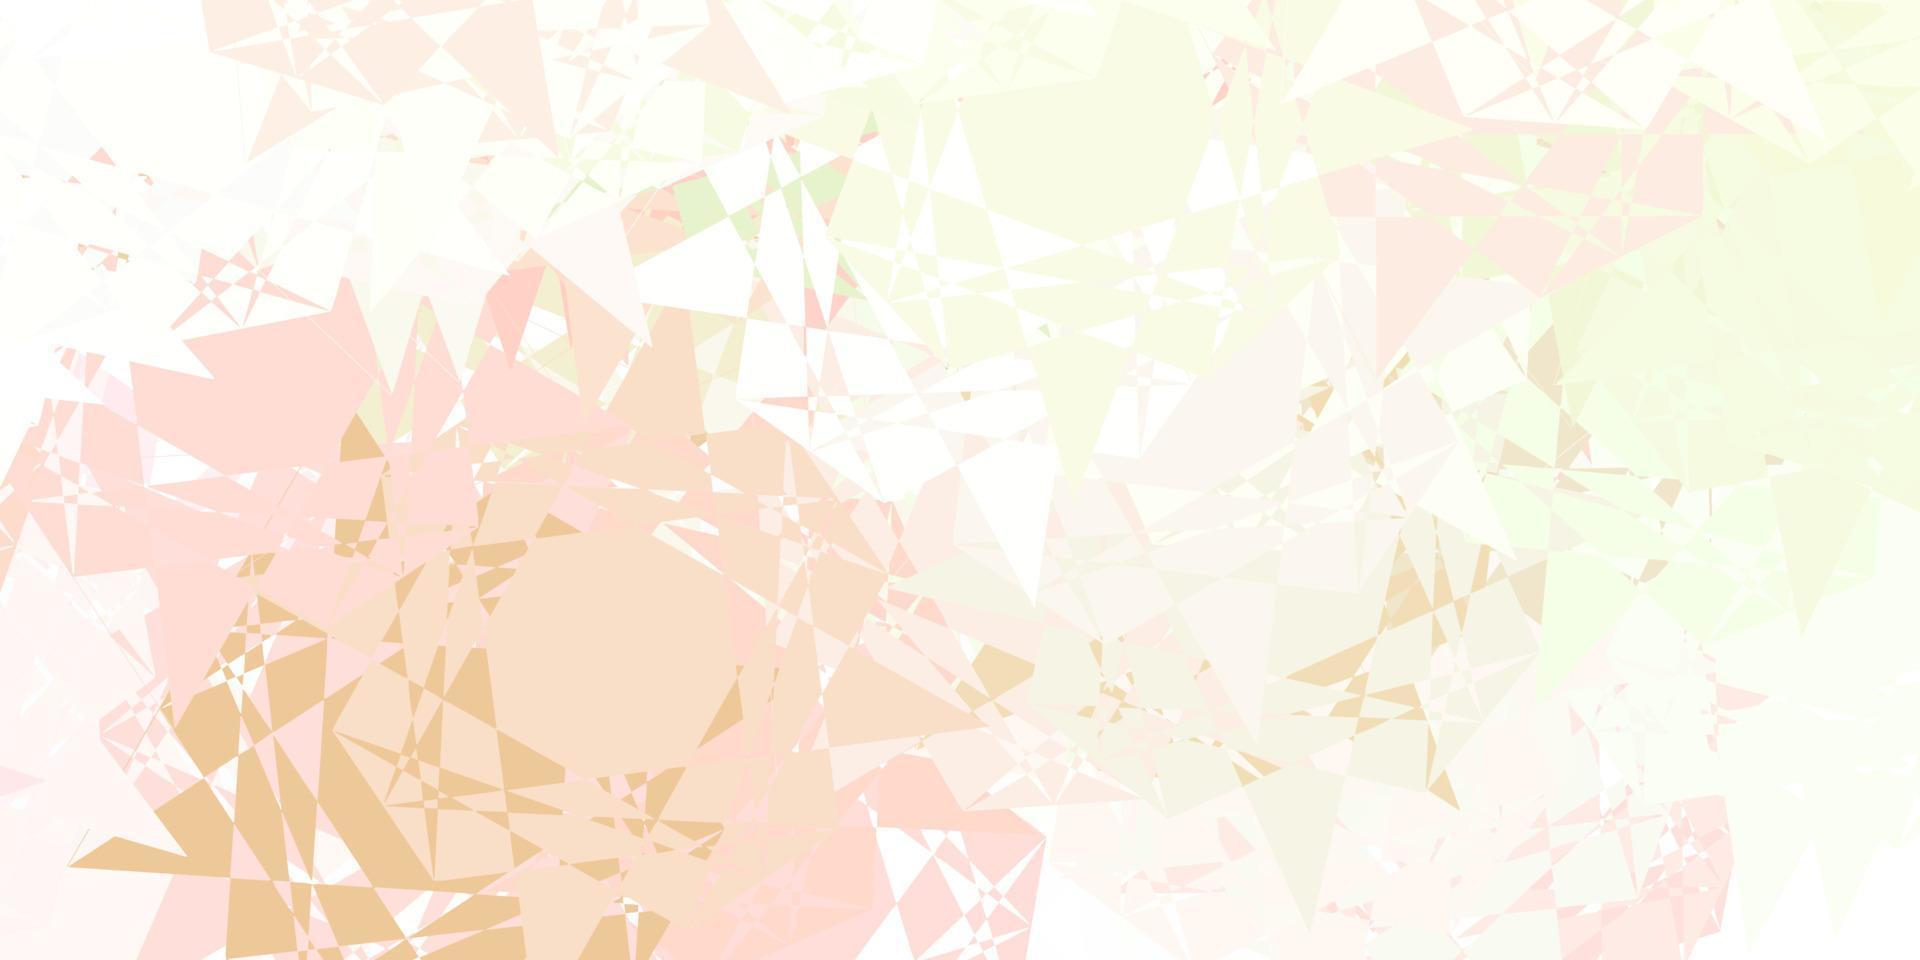 fond de vecteur rose clair, vert avec des formes polygonales.